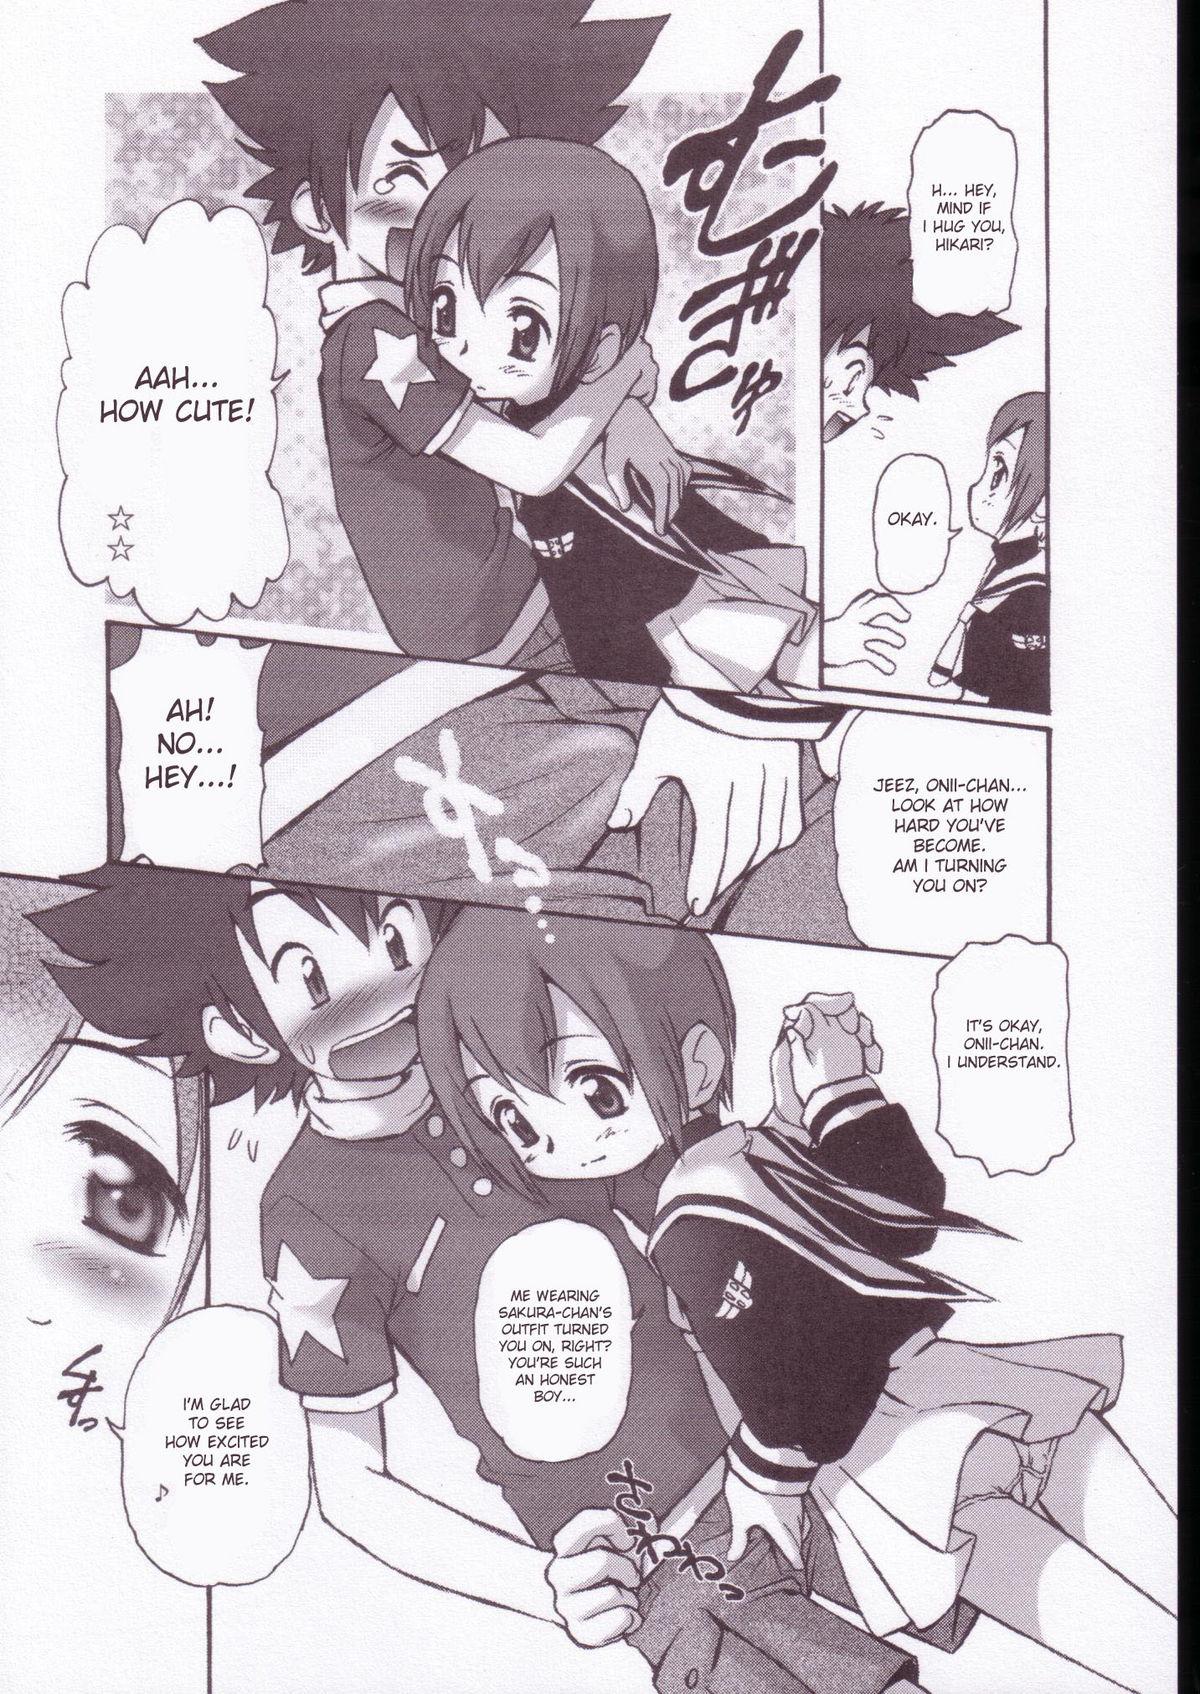  Digitama 05 - Digimon adventure Slim - Page 8